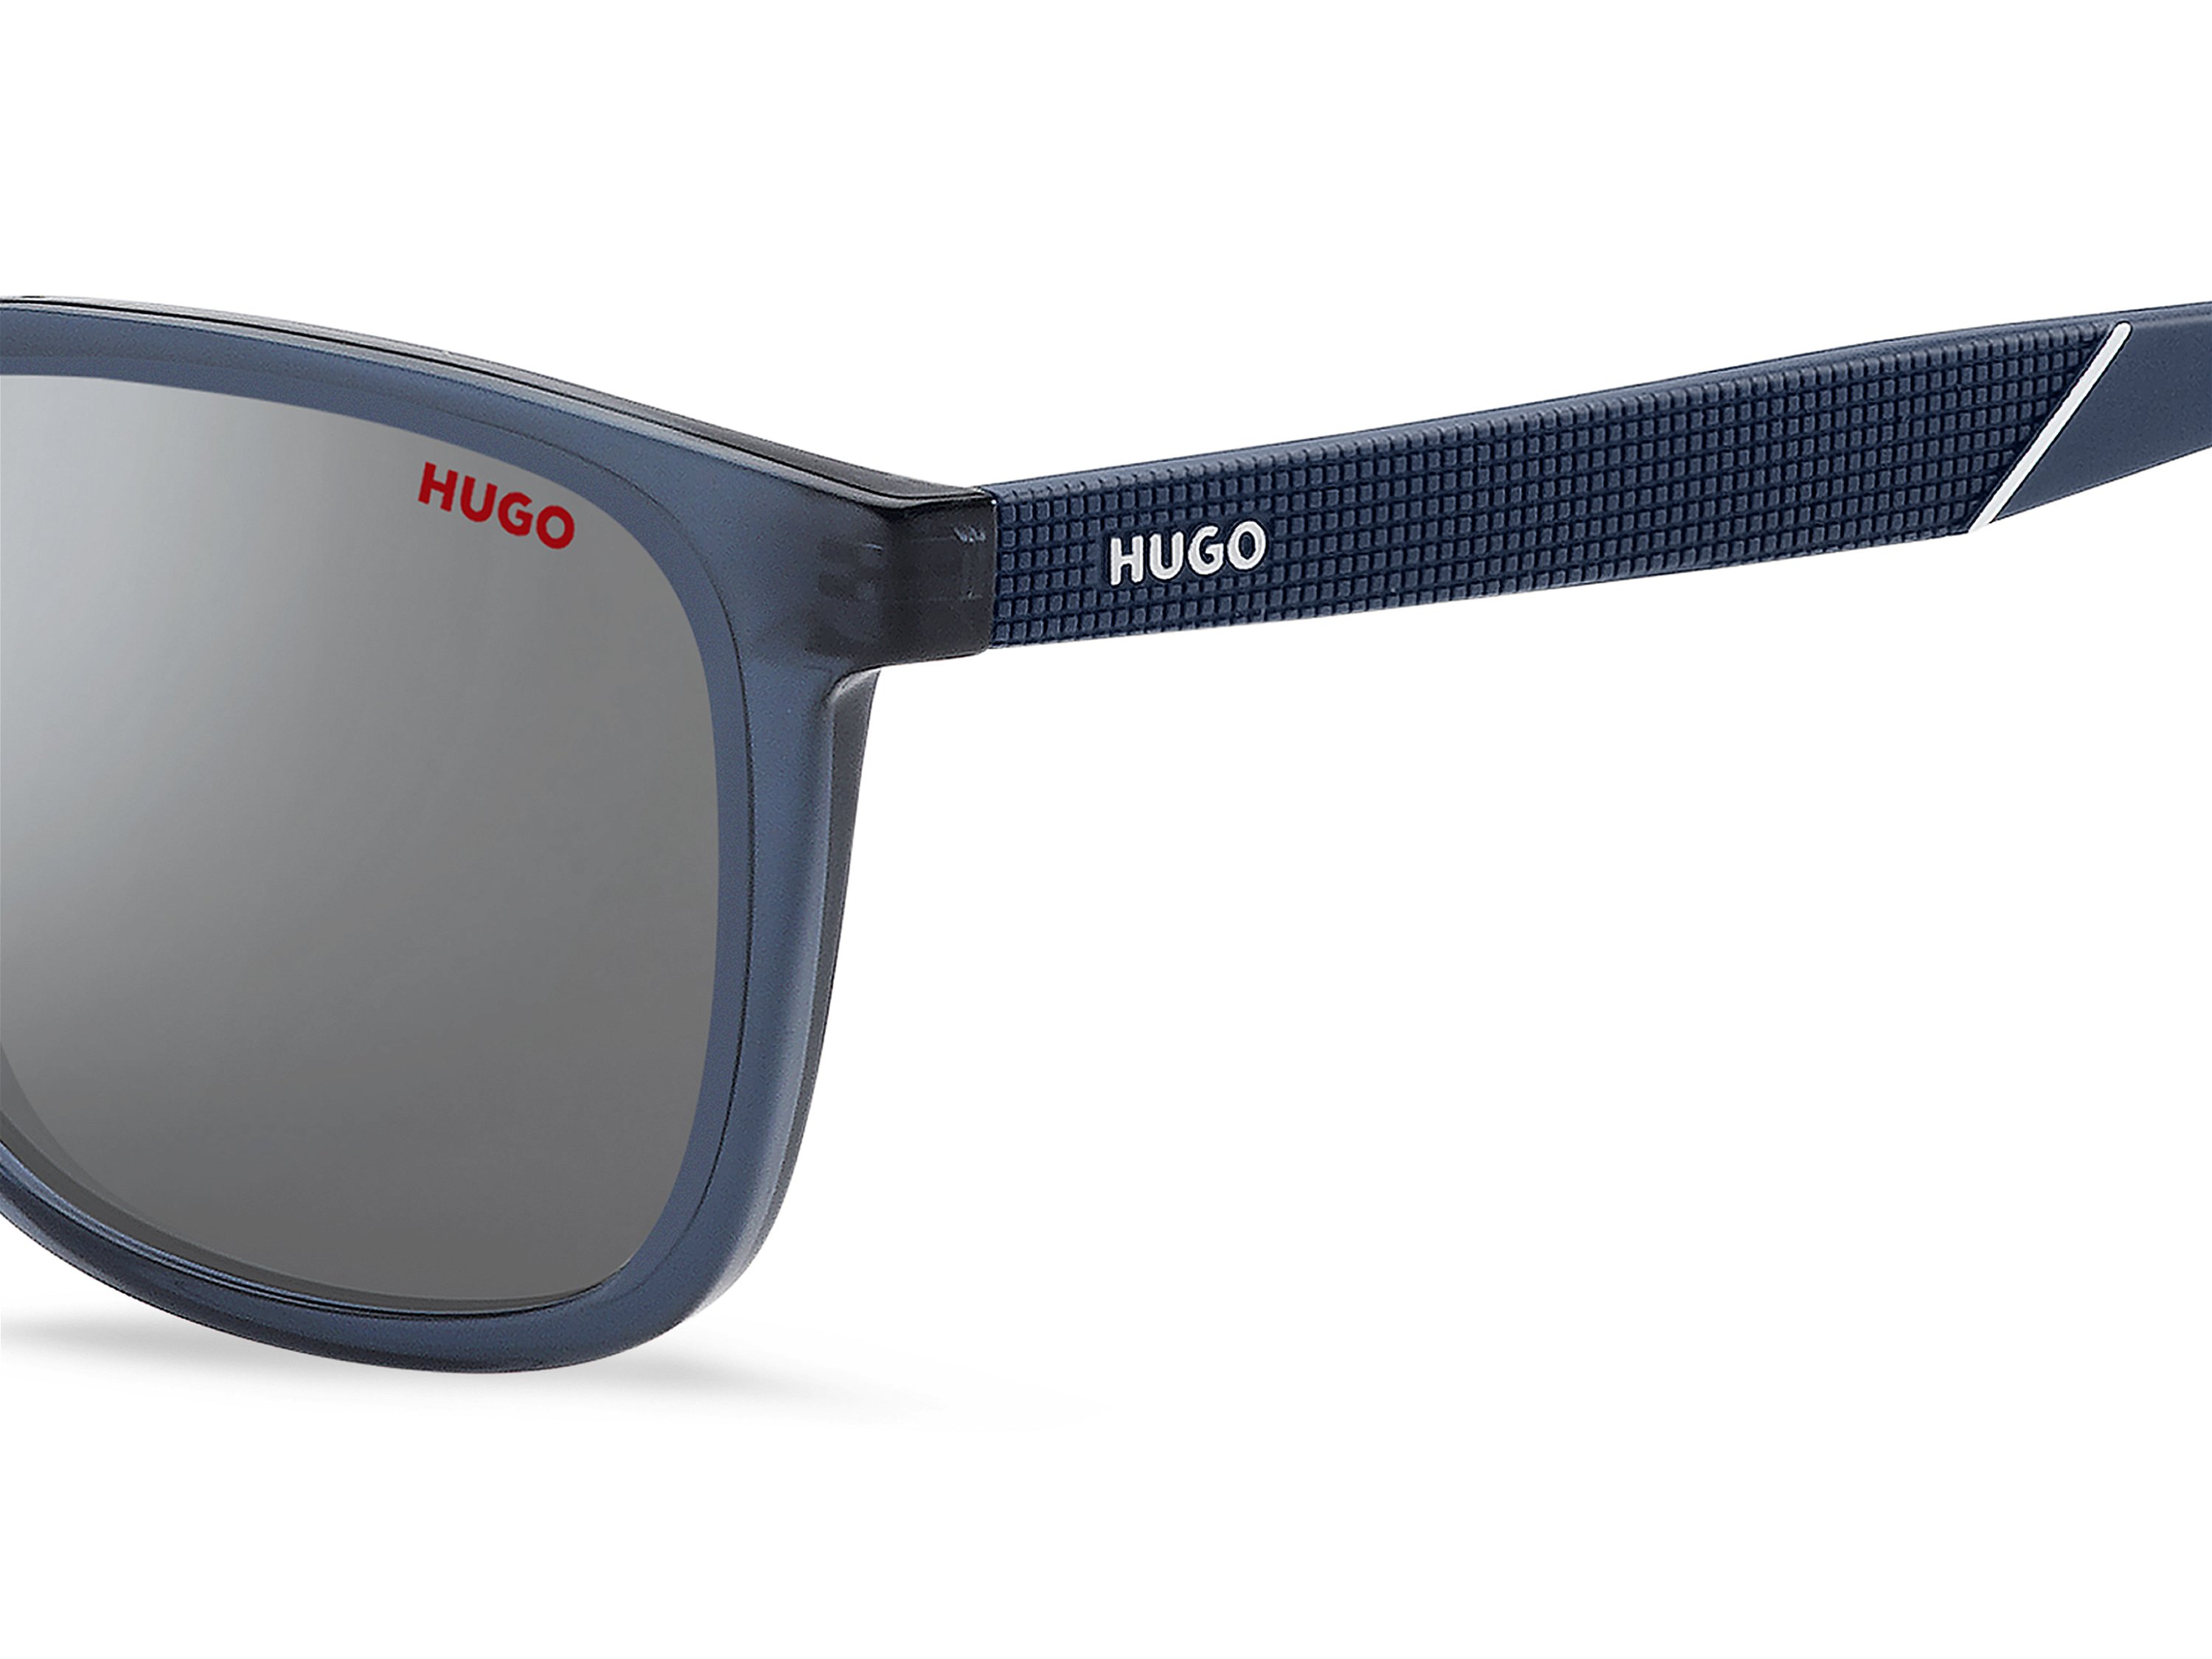 Das Bild zeigt die Sonnenbrille HG1306/S PJP von der Marke Hugo in blau.